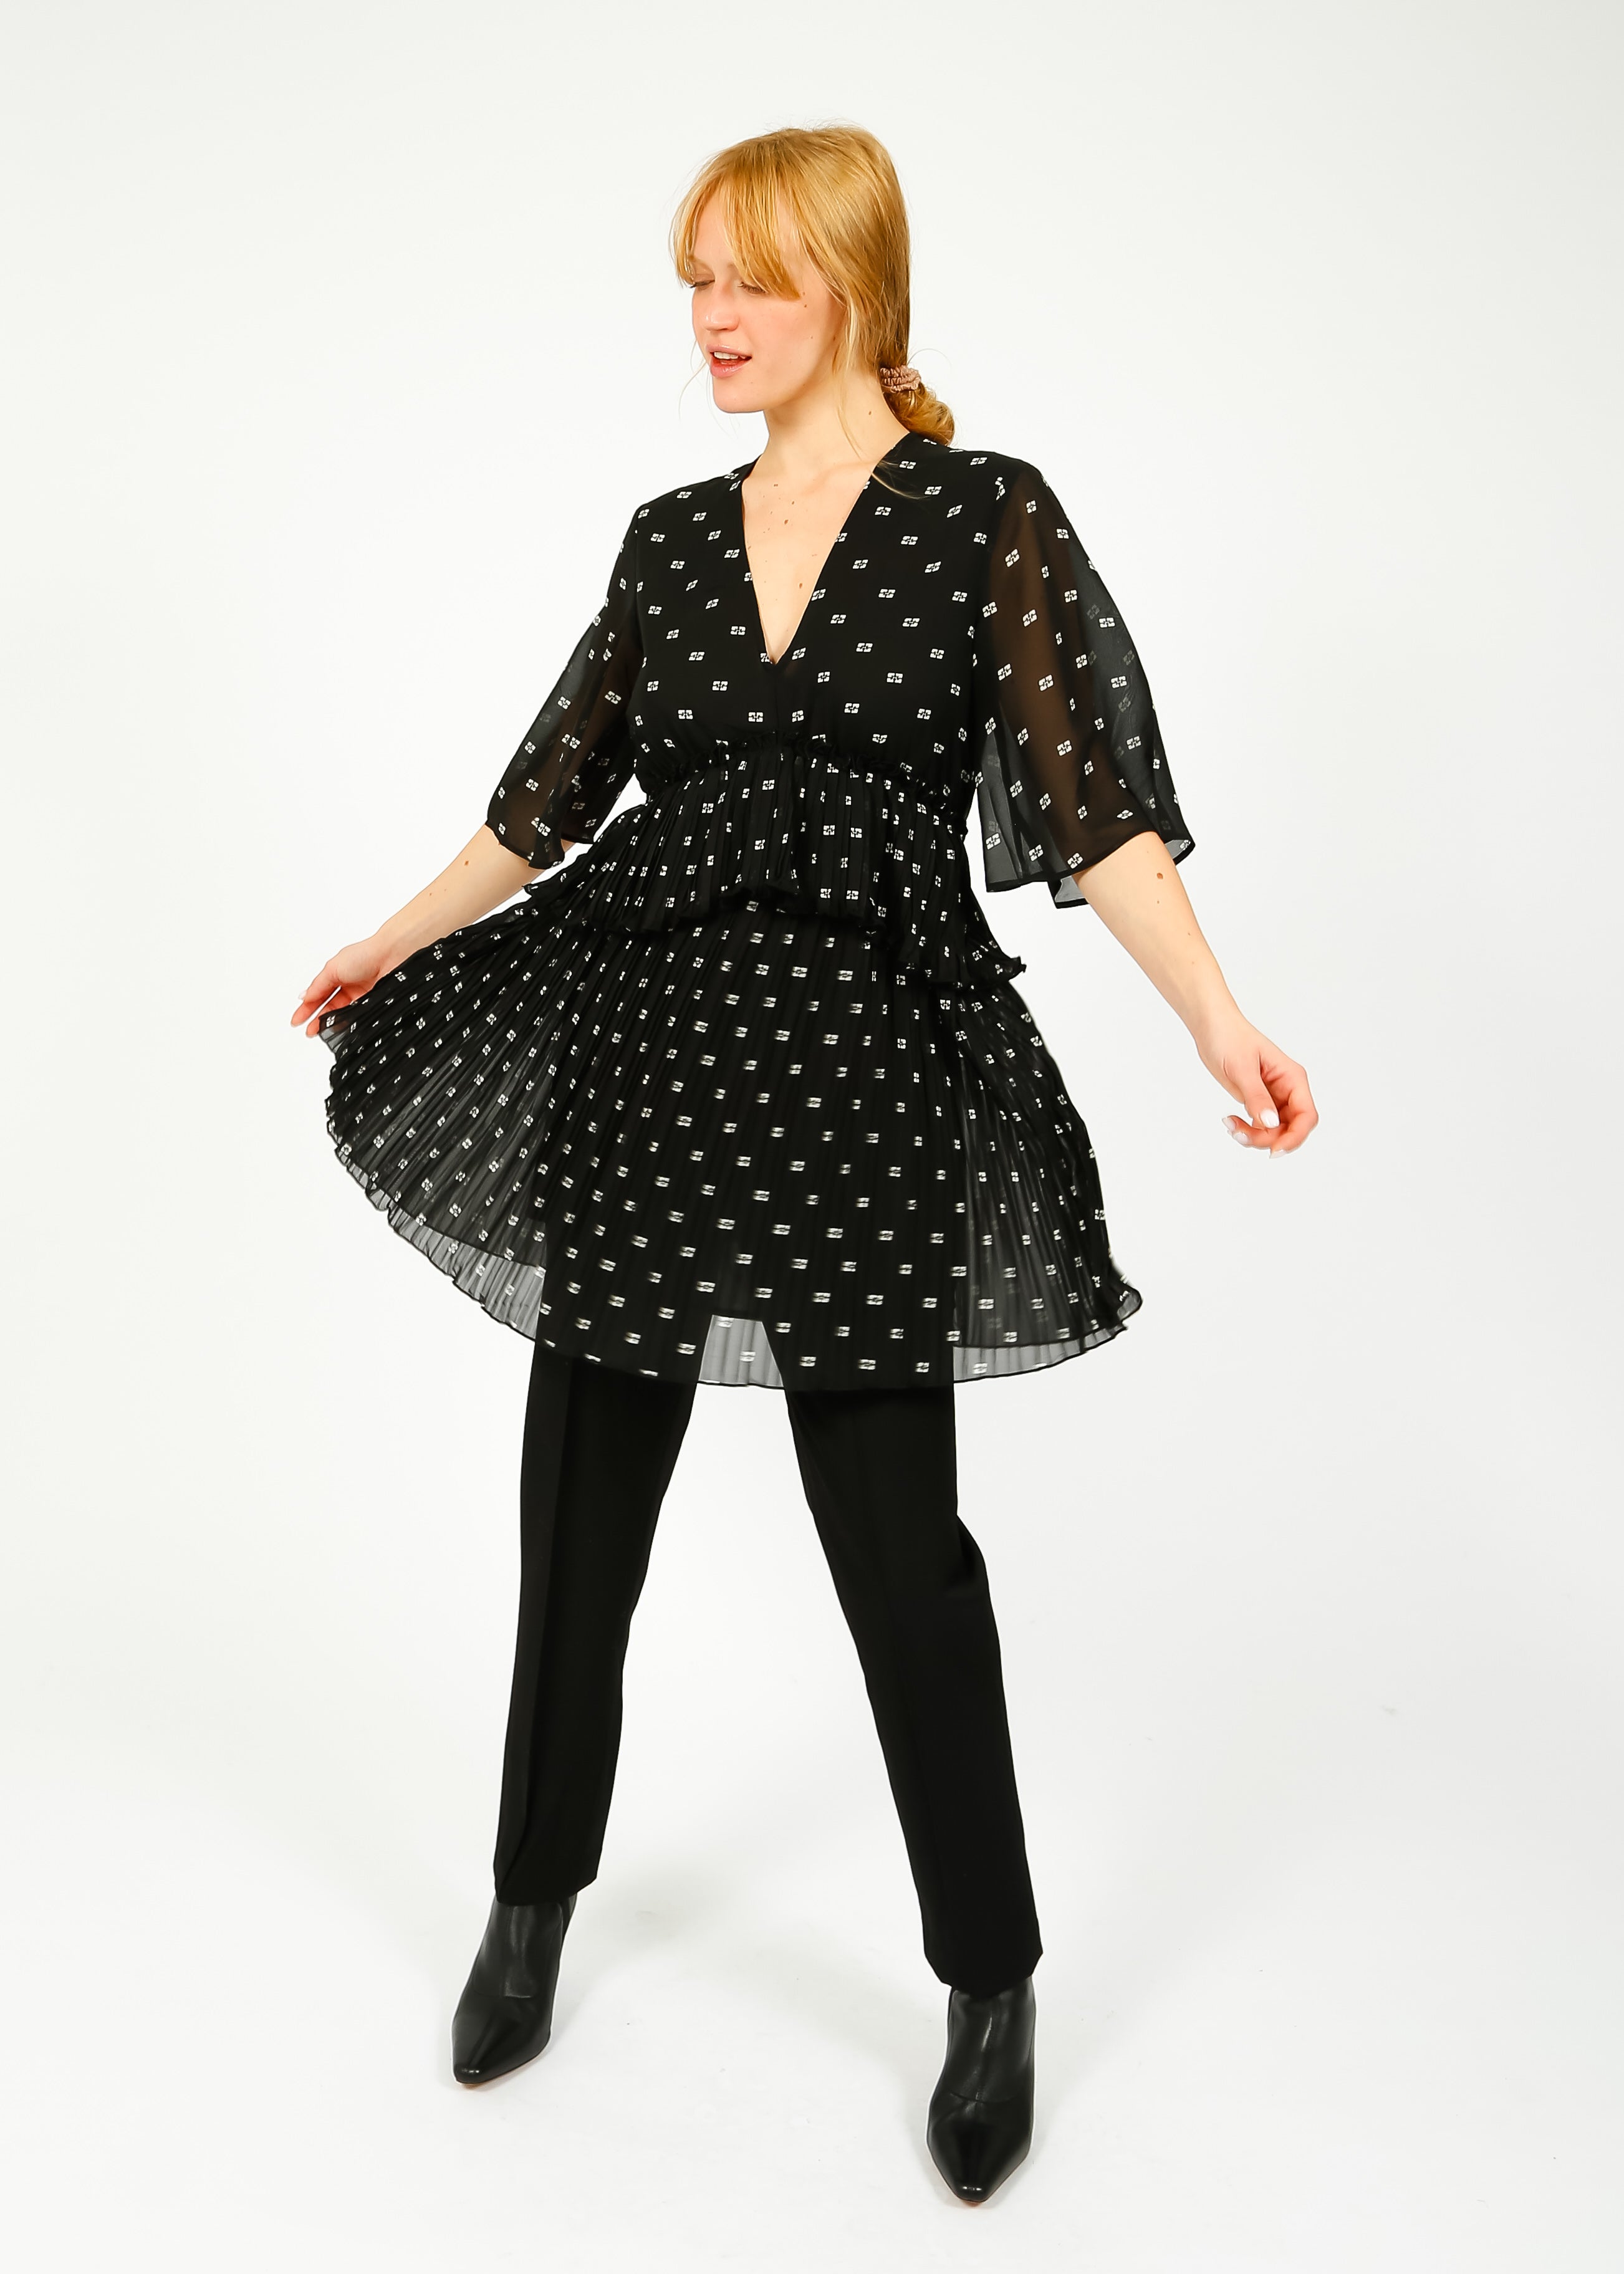 velvet by graham spencer dress small polka dot tie waist black and white